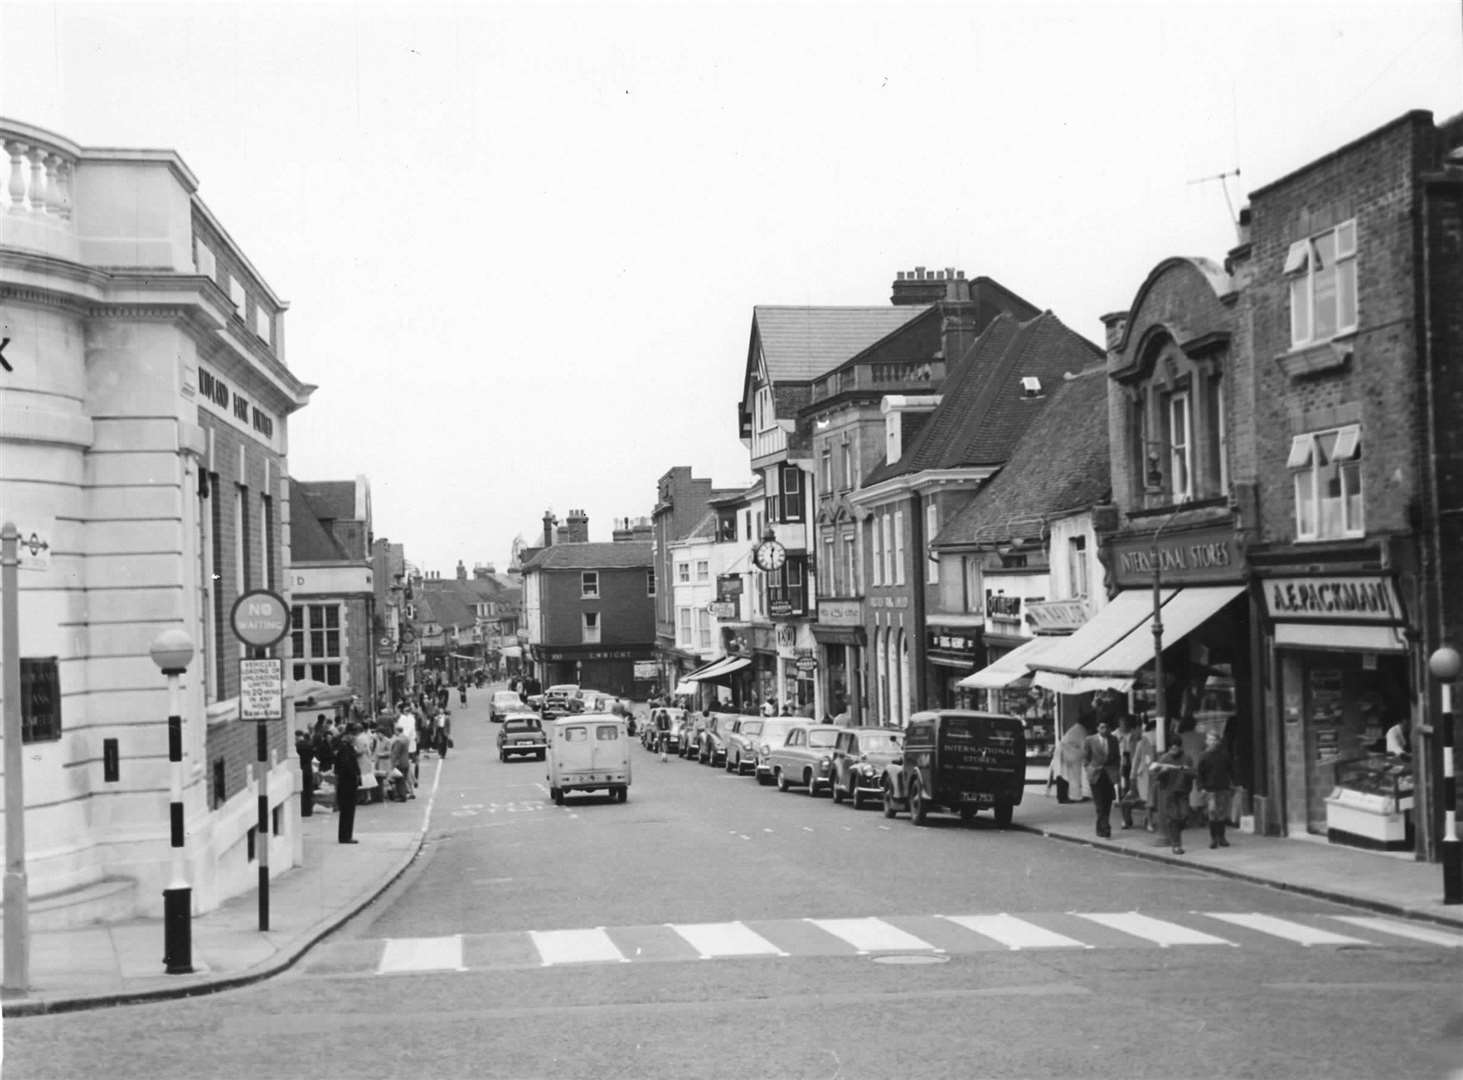 Sevenoaks High Street in 1959